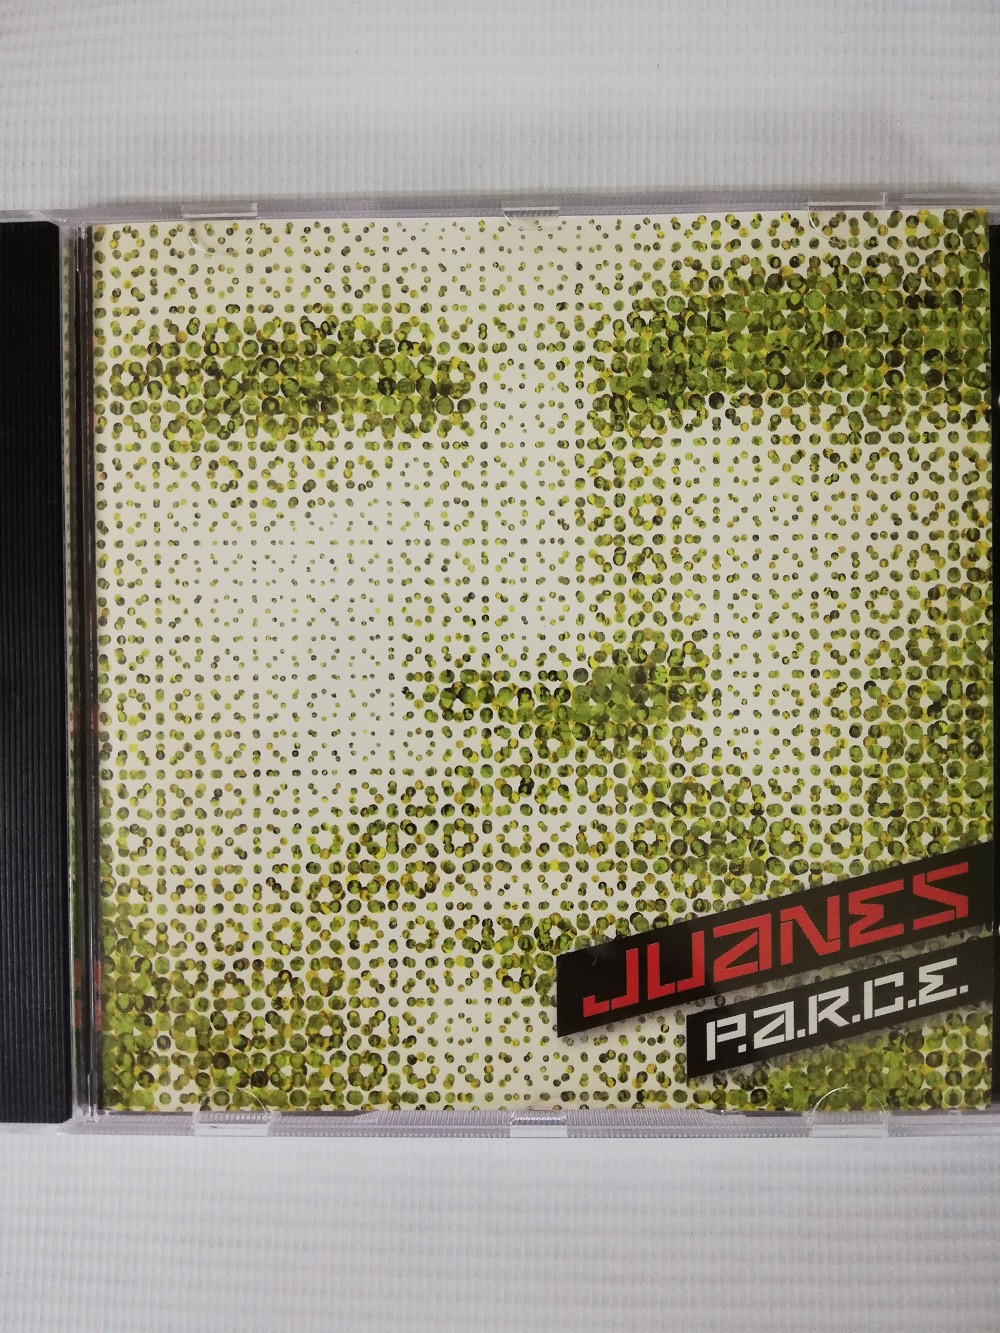 Imagen CD JUANES - P.A.R.C.E.